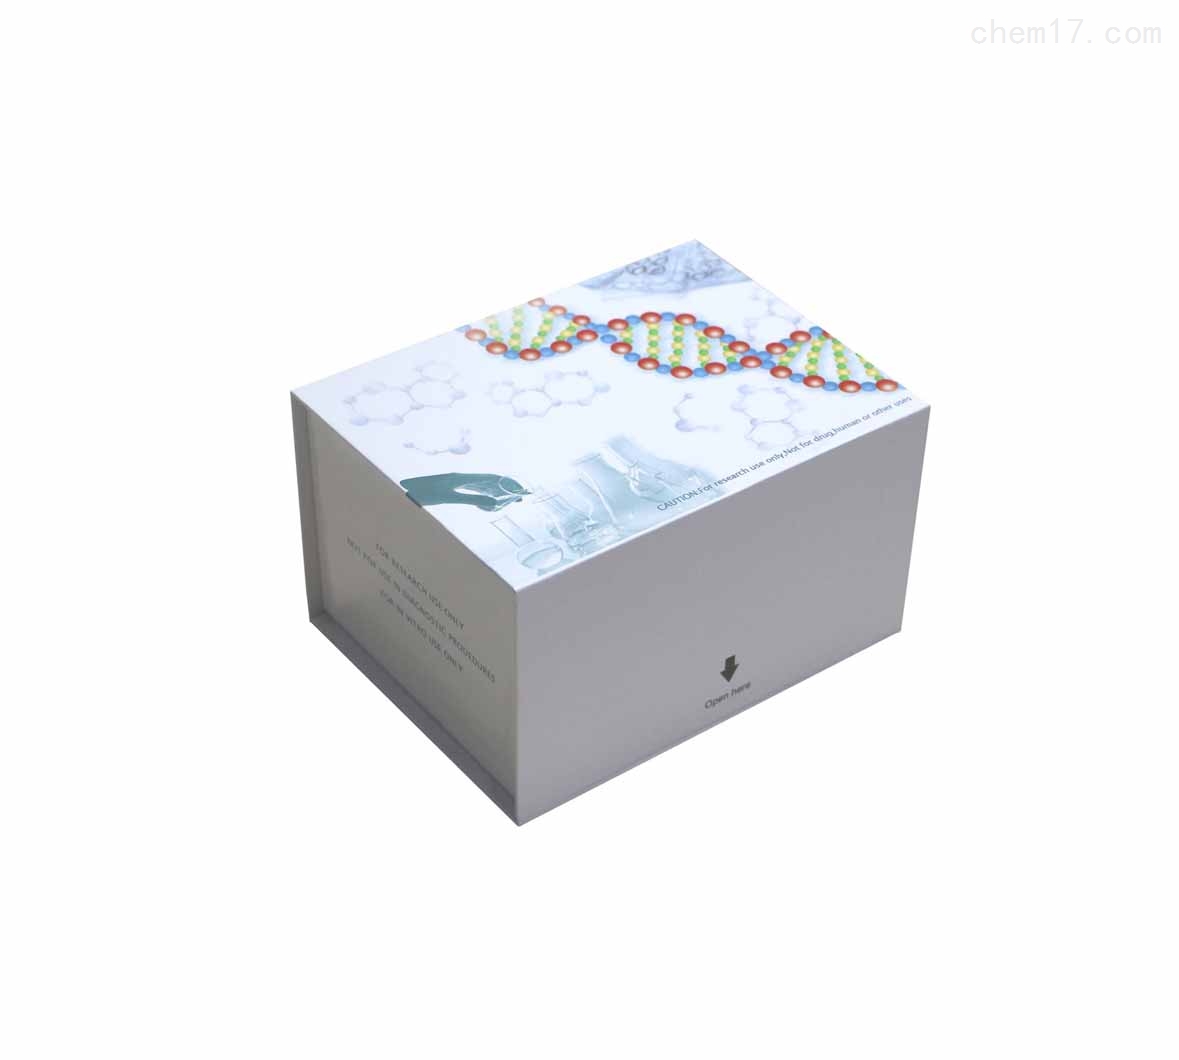 环磷酸腺苷(cAMP)ELISA试剂盒科研专用